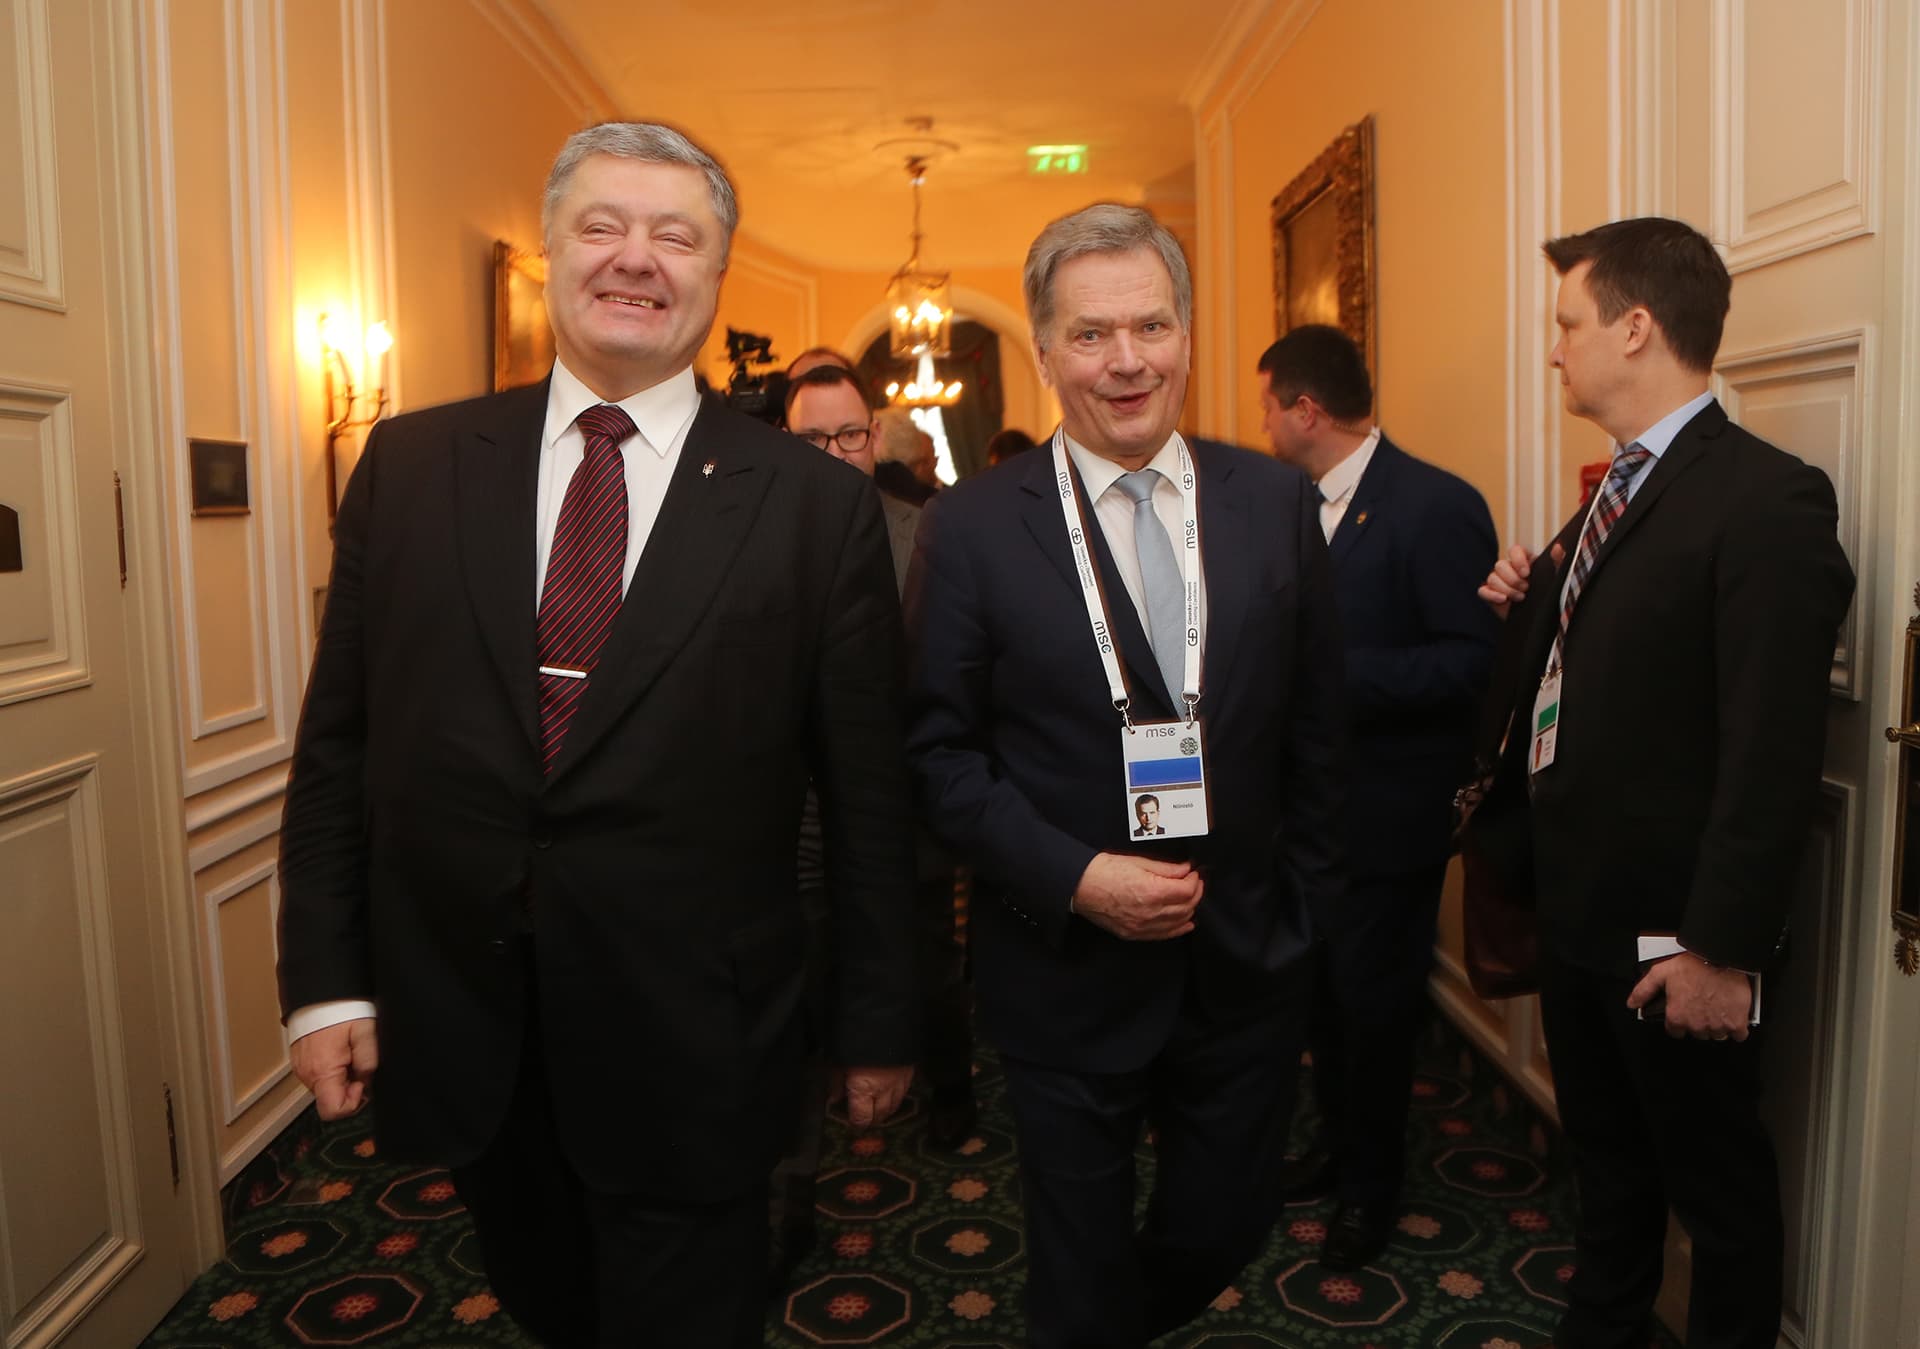 Tasavallan presidentti Sauli Niinistö ja Ukrainan presidentti Petro Porošenko tapaamisessa Münchenin turvallisuuskokouksen yhteydessä 17.2.2018